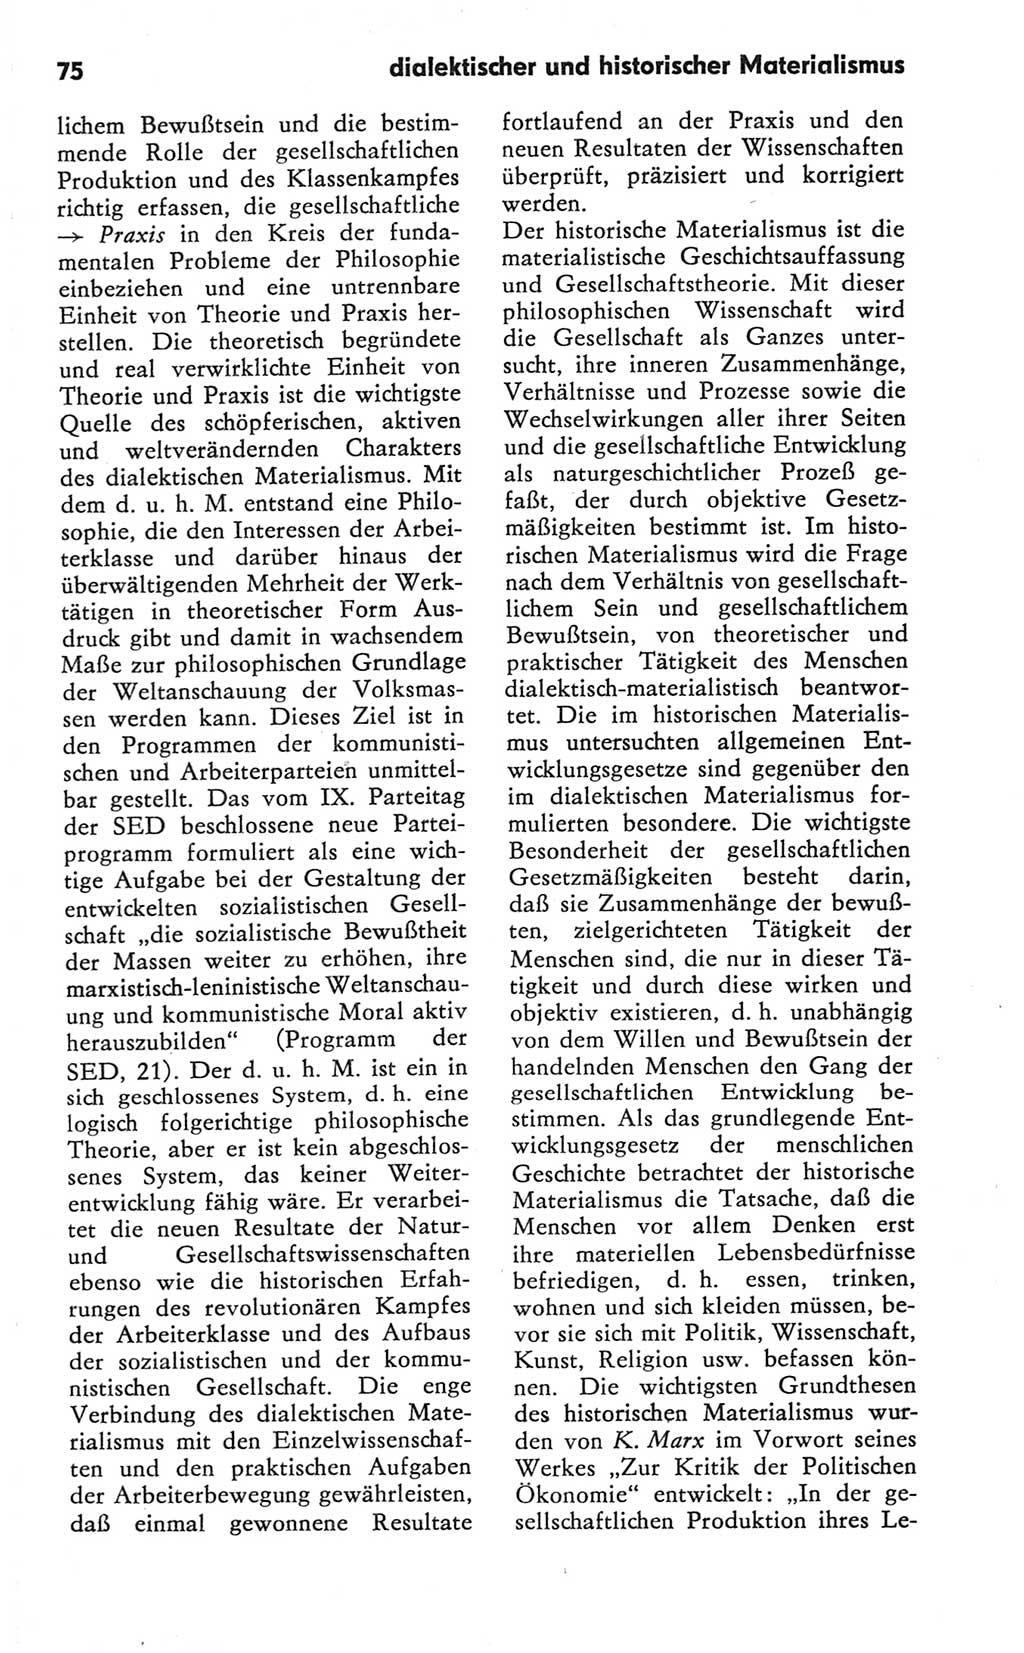 Kleines Wörterbuch der marxistisch-leninistischen Philosophie [Deutsche Demokratische Republik (DDR)] 1981, Seite 75 (Kl. Wb. ML Phil. DDR 1981, S. 75)